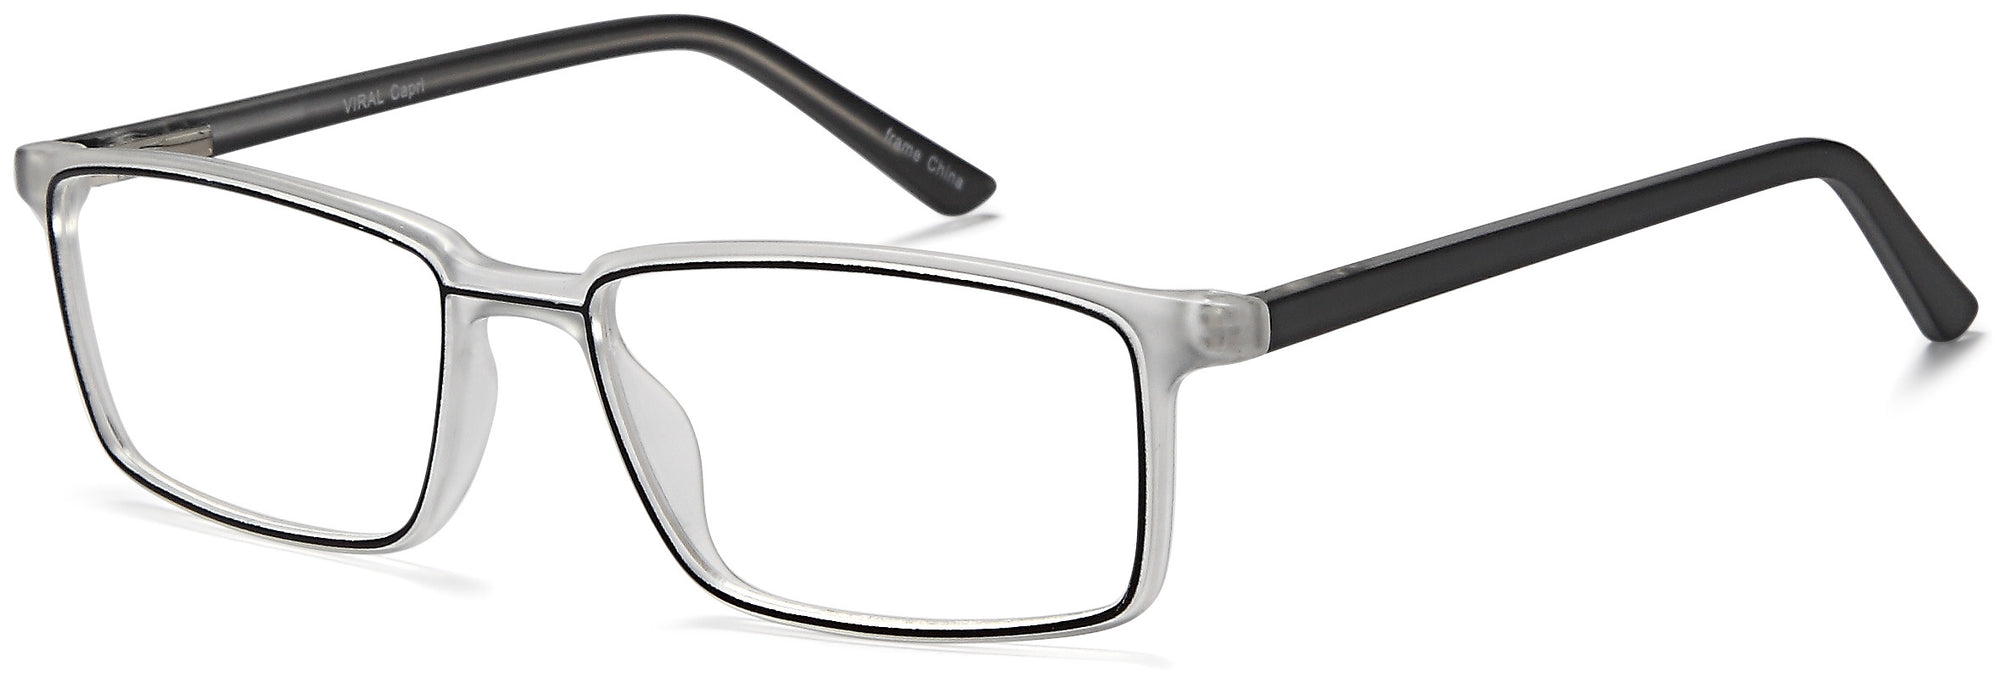 Millennial Eyewear Eyeglasses Selfie - Go-Readers.com